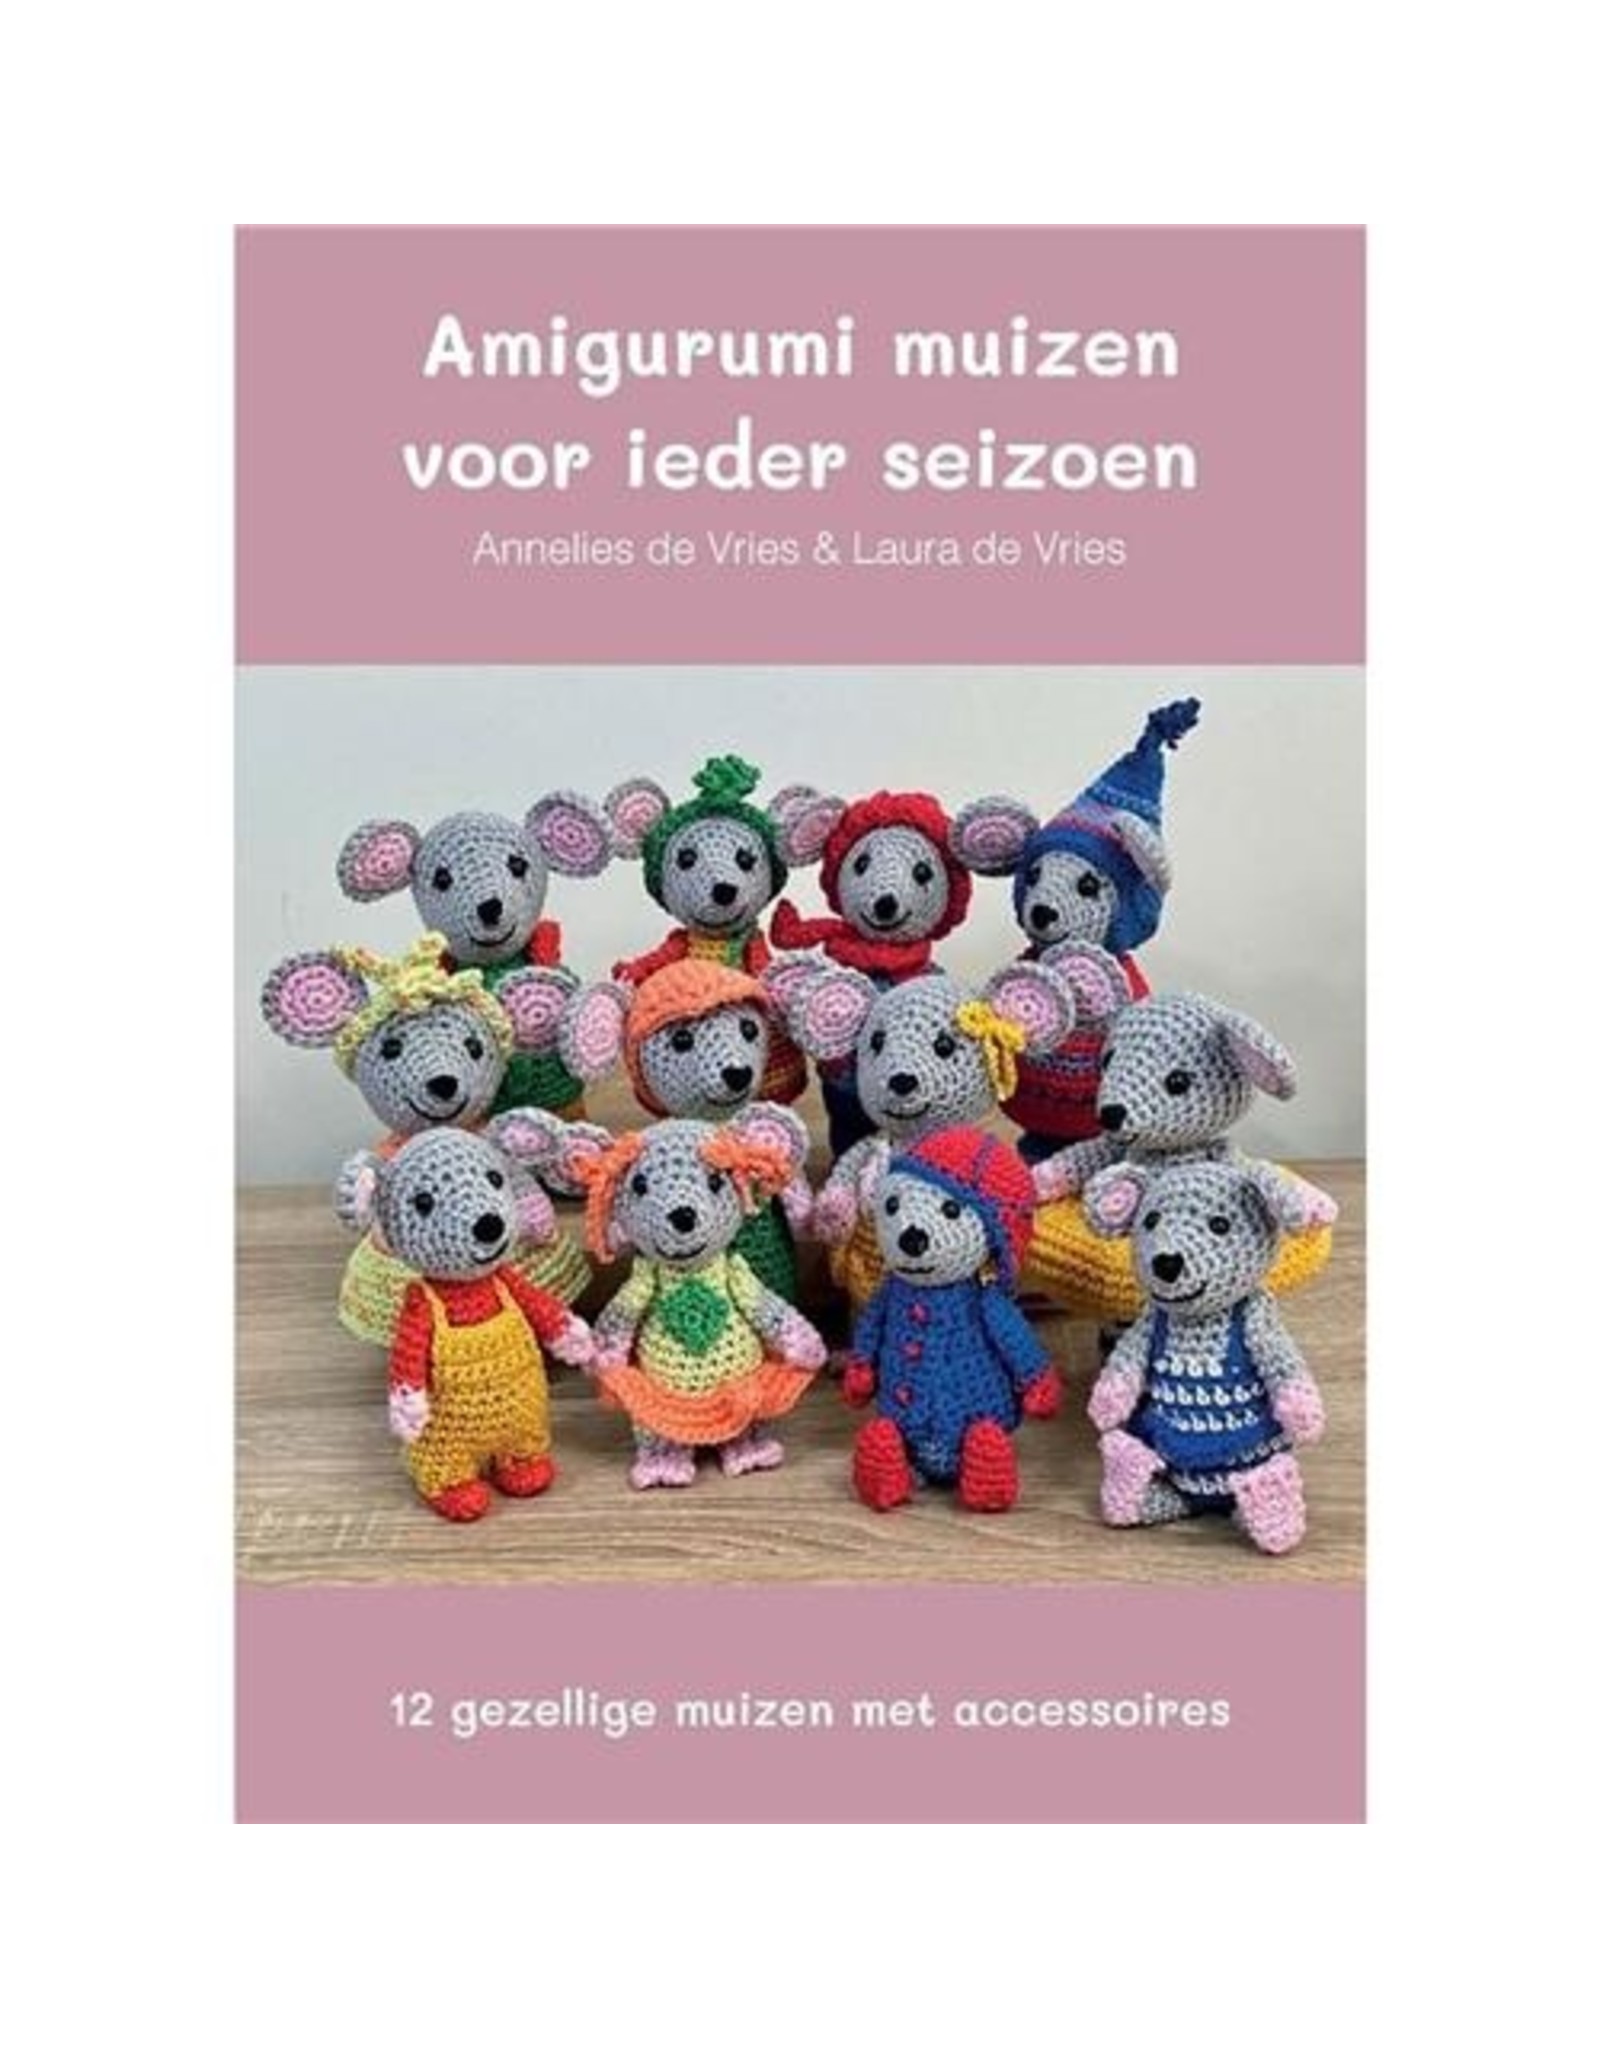 Boek: Amigurumi muizen voor ieder seizoen